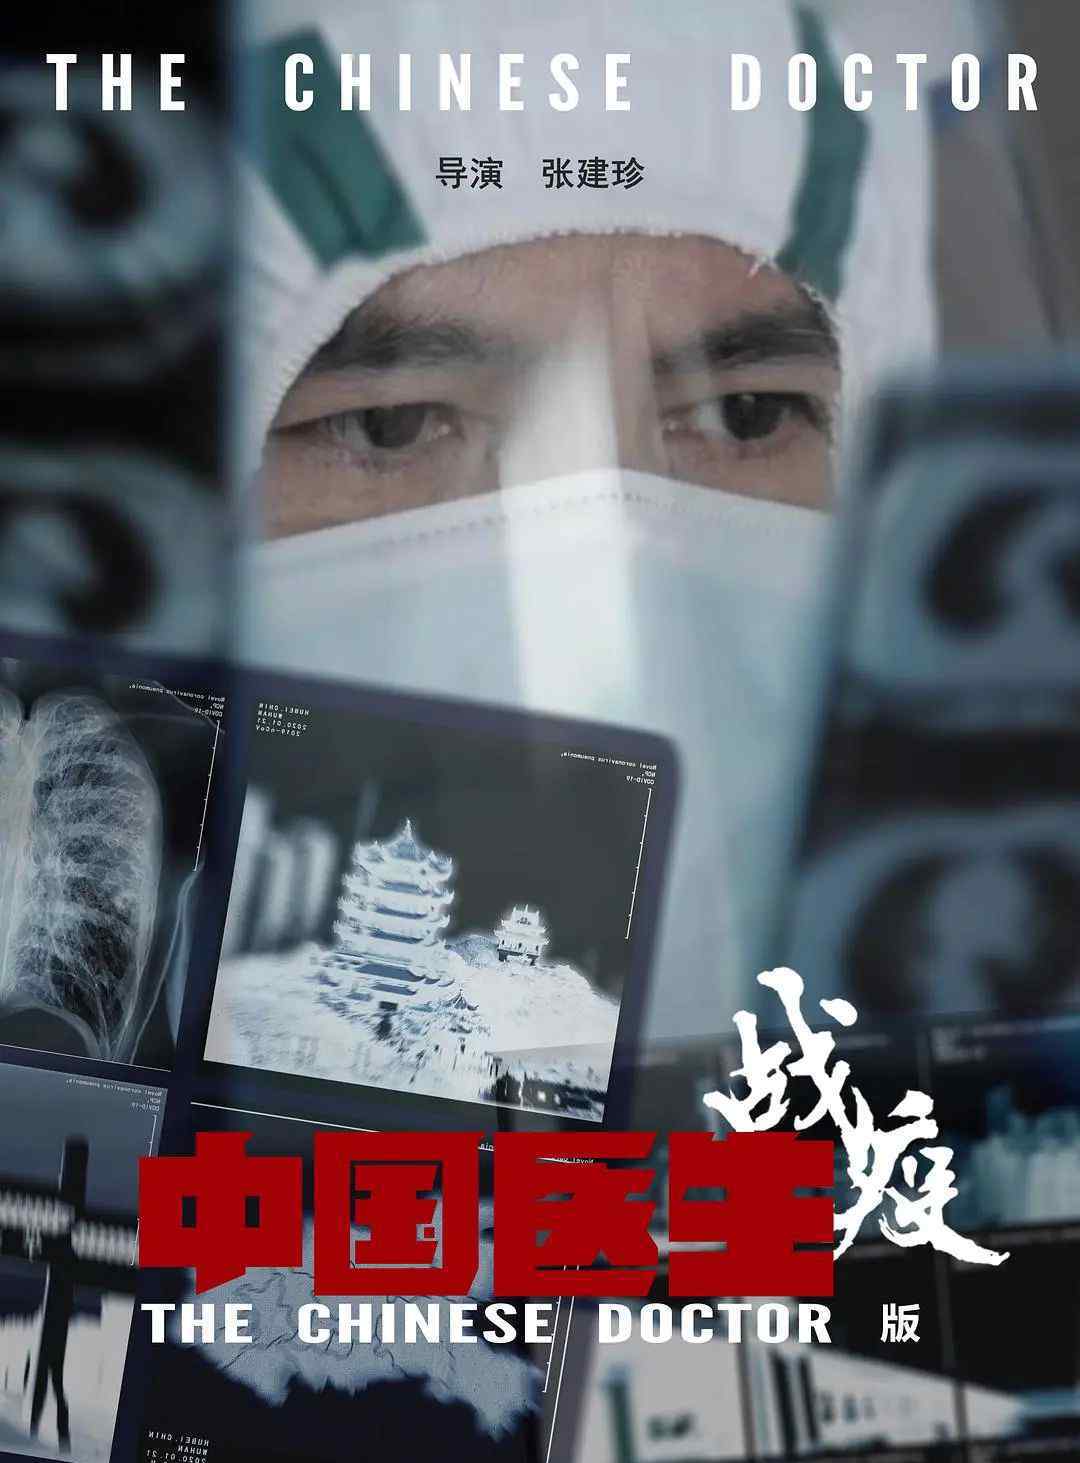 推荐几部医疗纪录片 《中国医生》战疫版来了，有些情节难以想象，选这家医院拍摄另有考虑